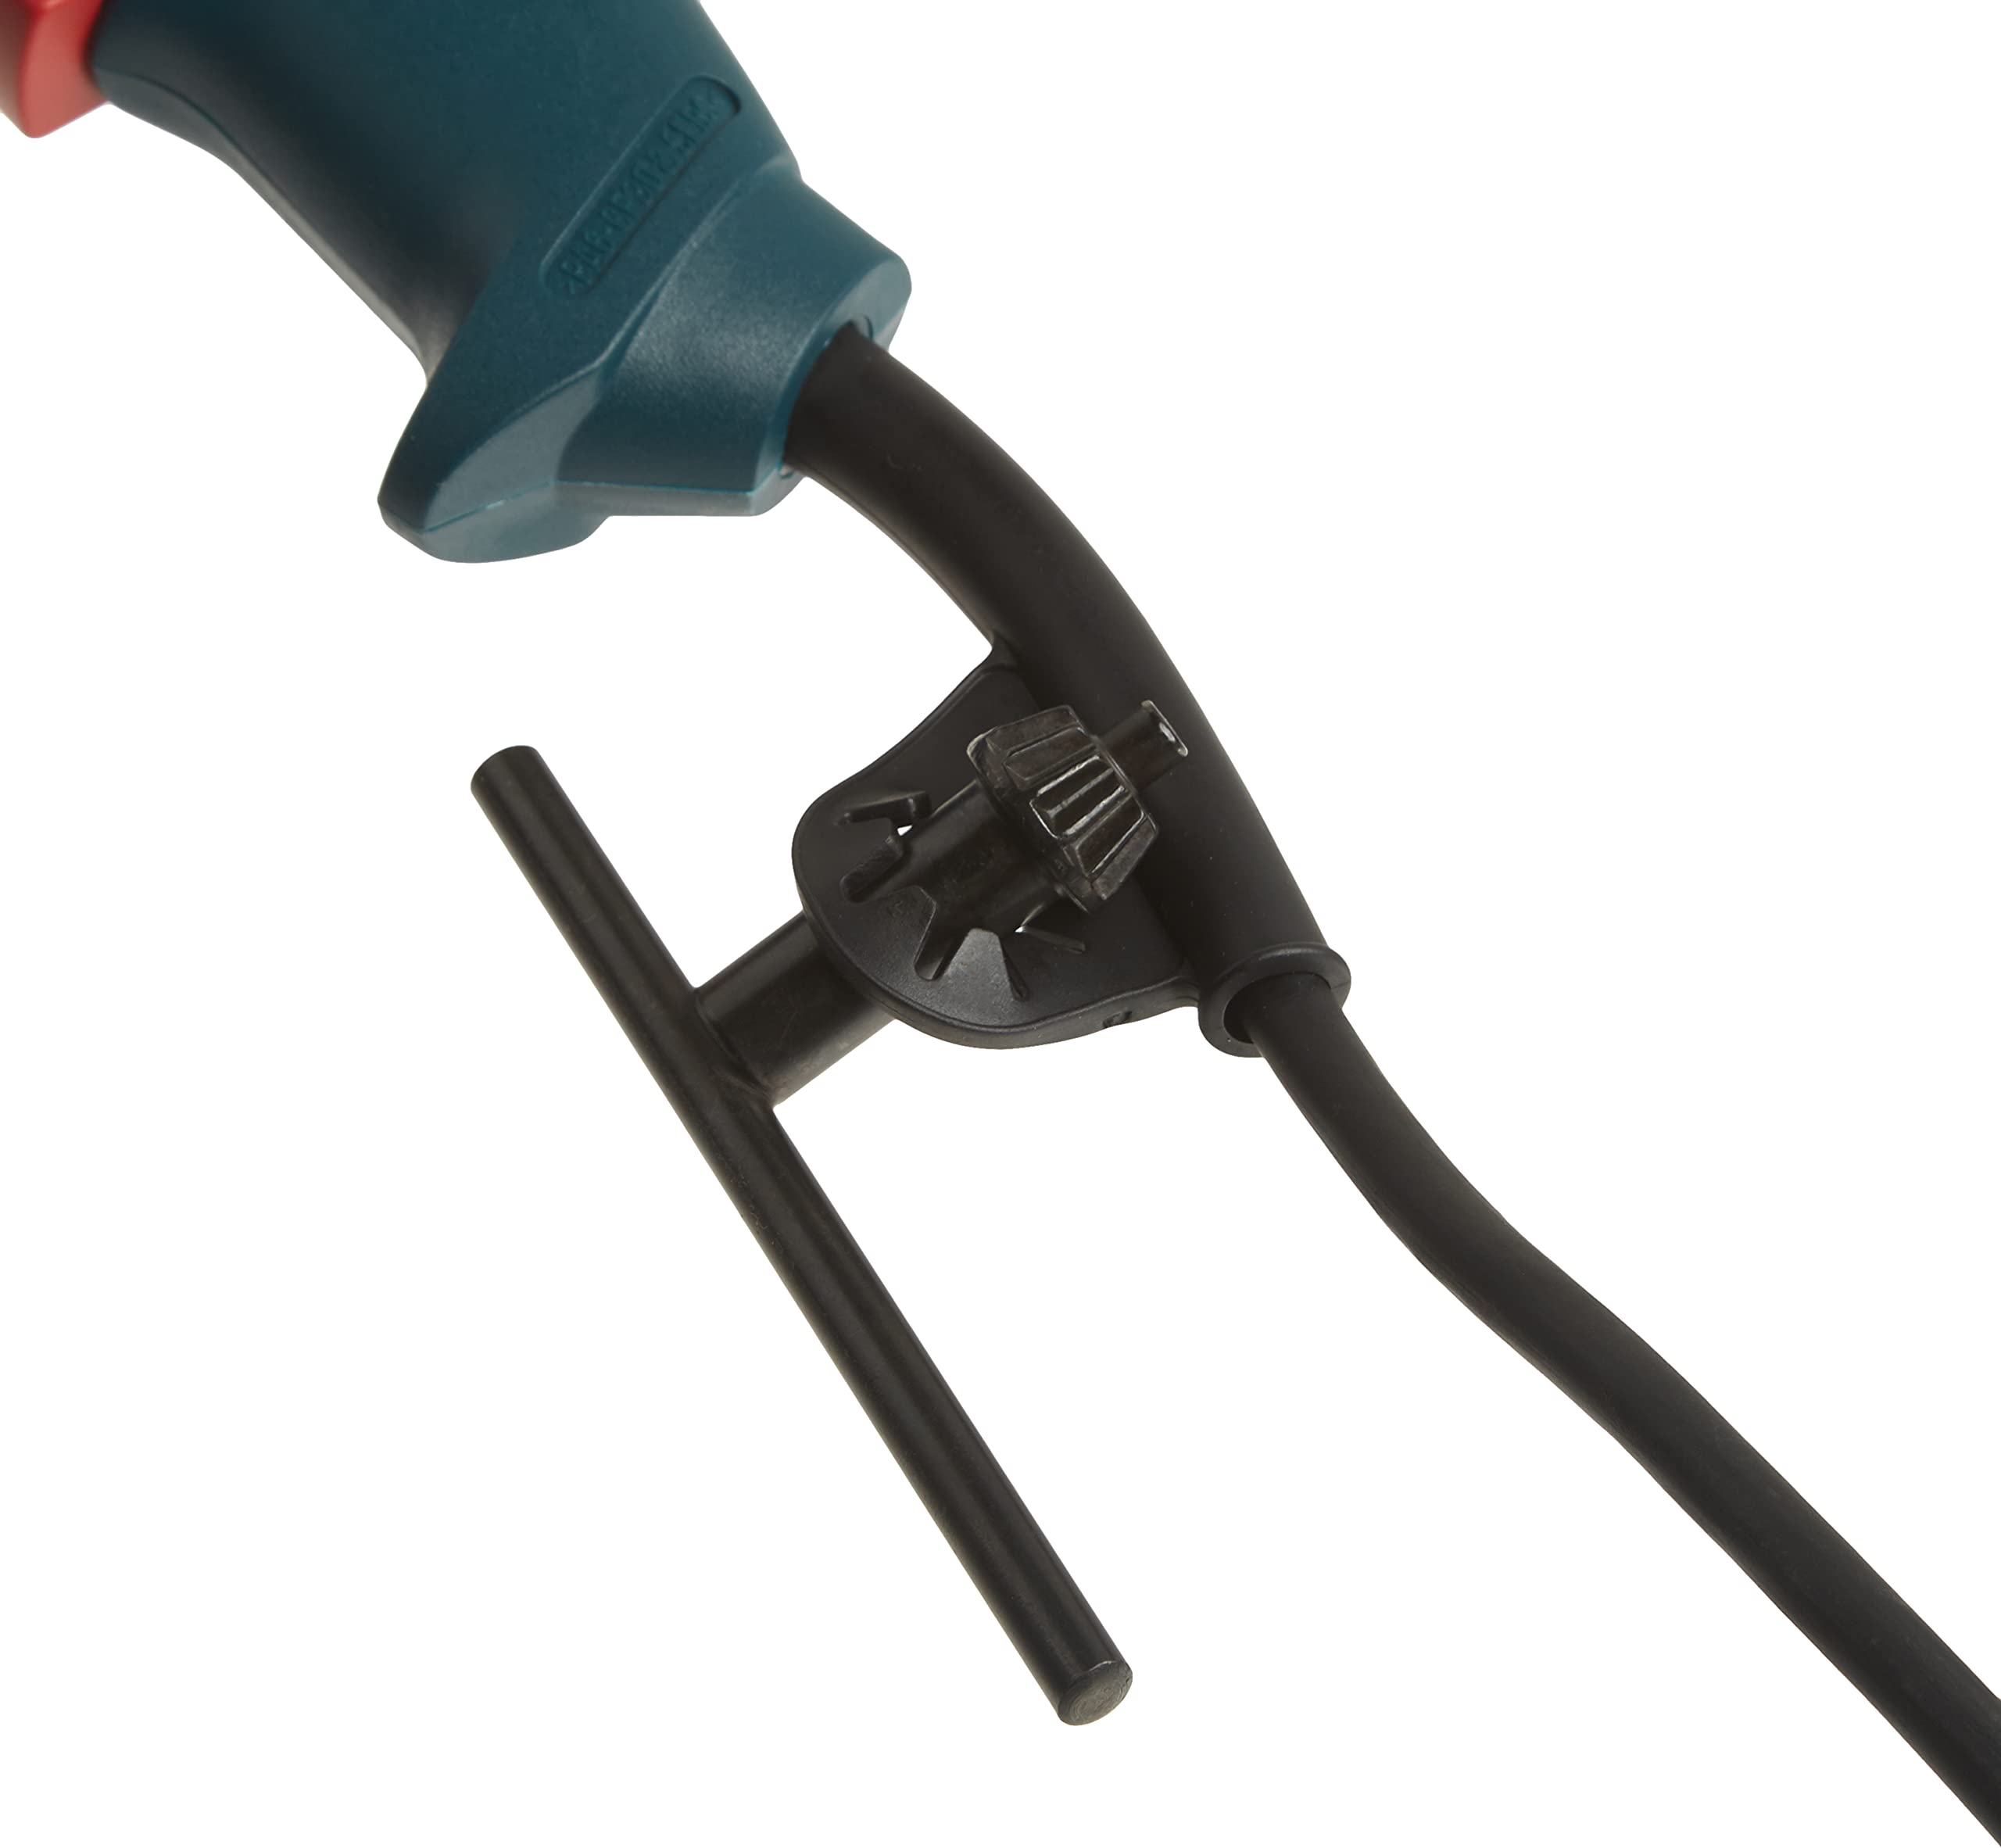 Bosch 1191VSRK 120-Volt 1/2-Inch Single-Speed Hammer Drill,Blue